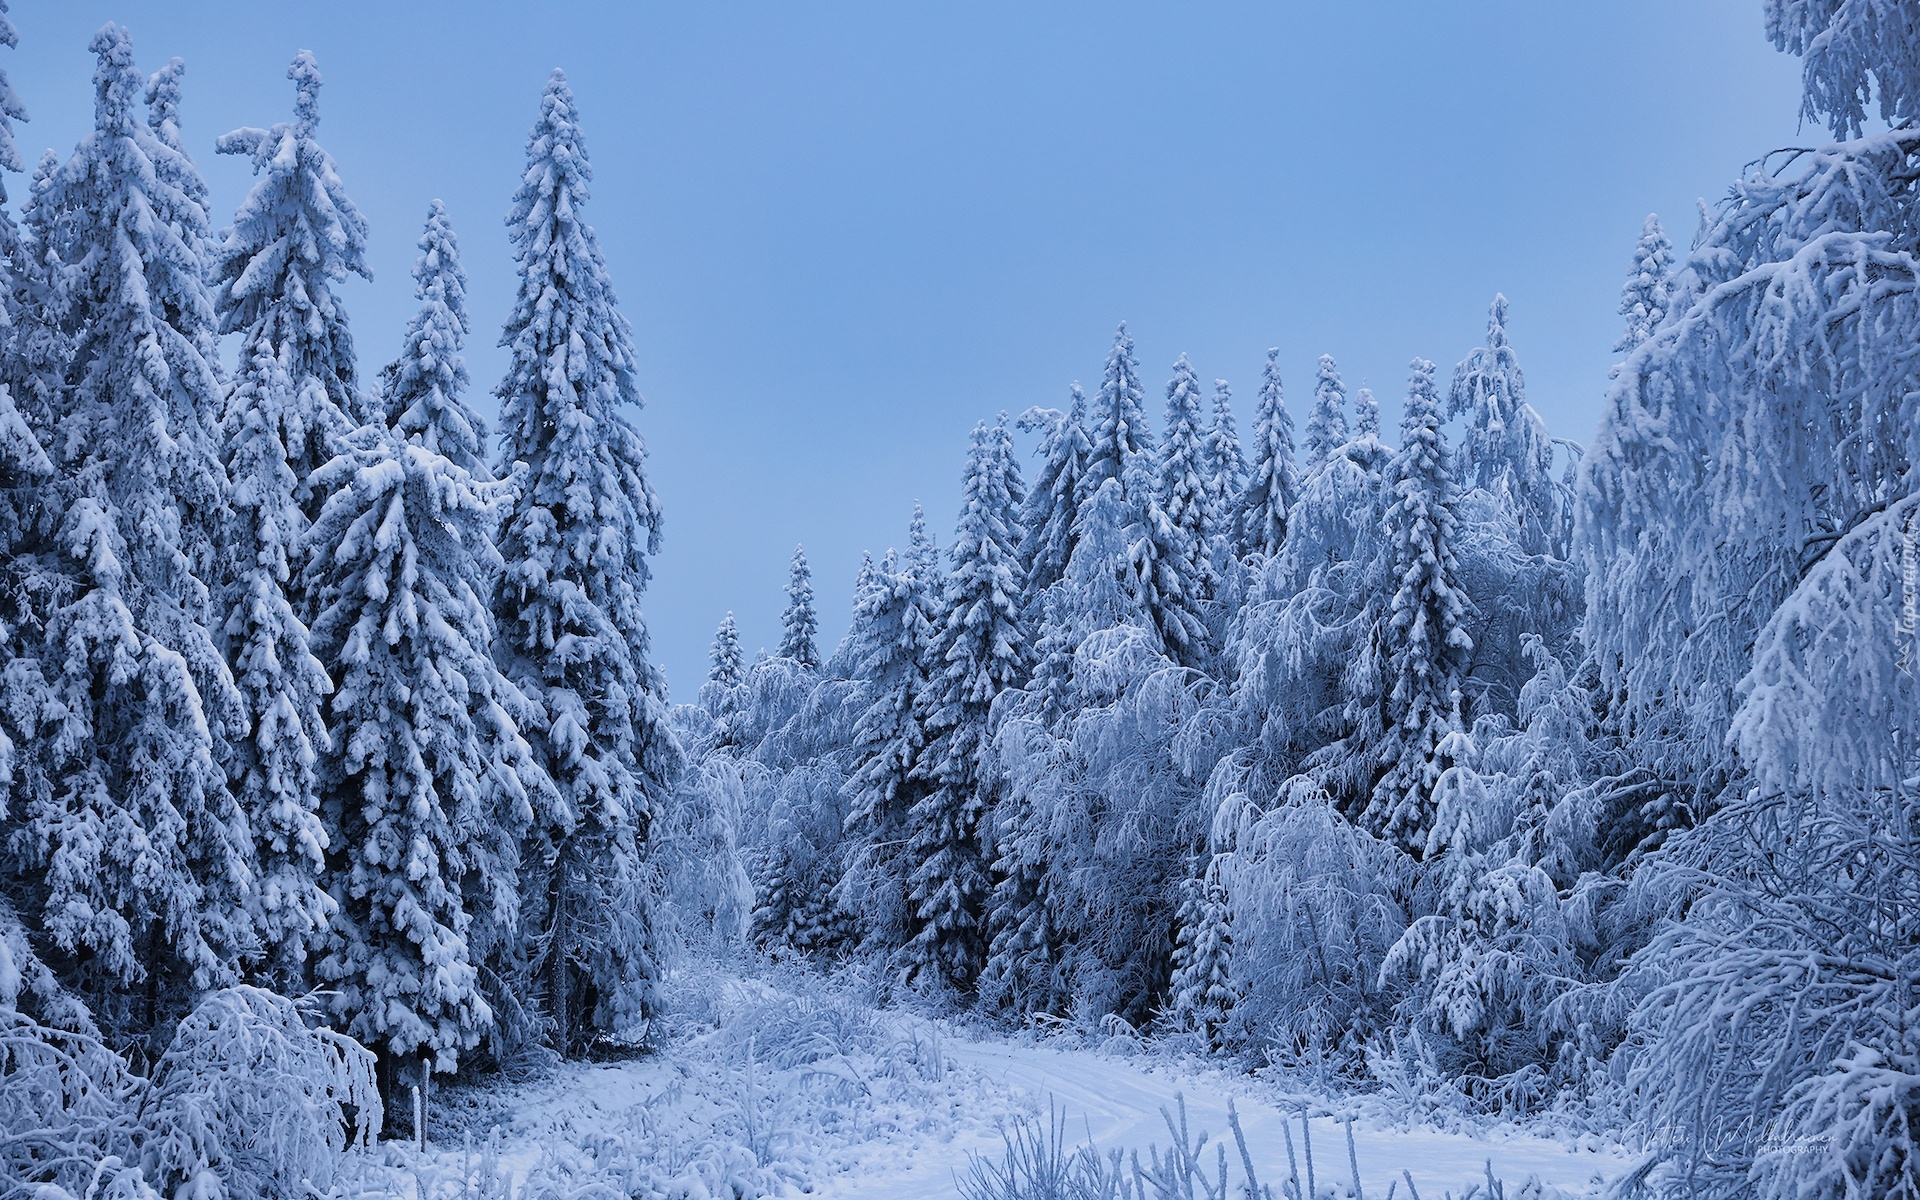 Zima, Śnieg, Ośnieżone, Drzewa iglaste, Las